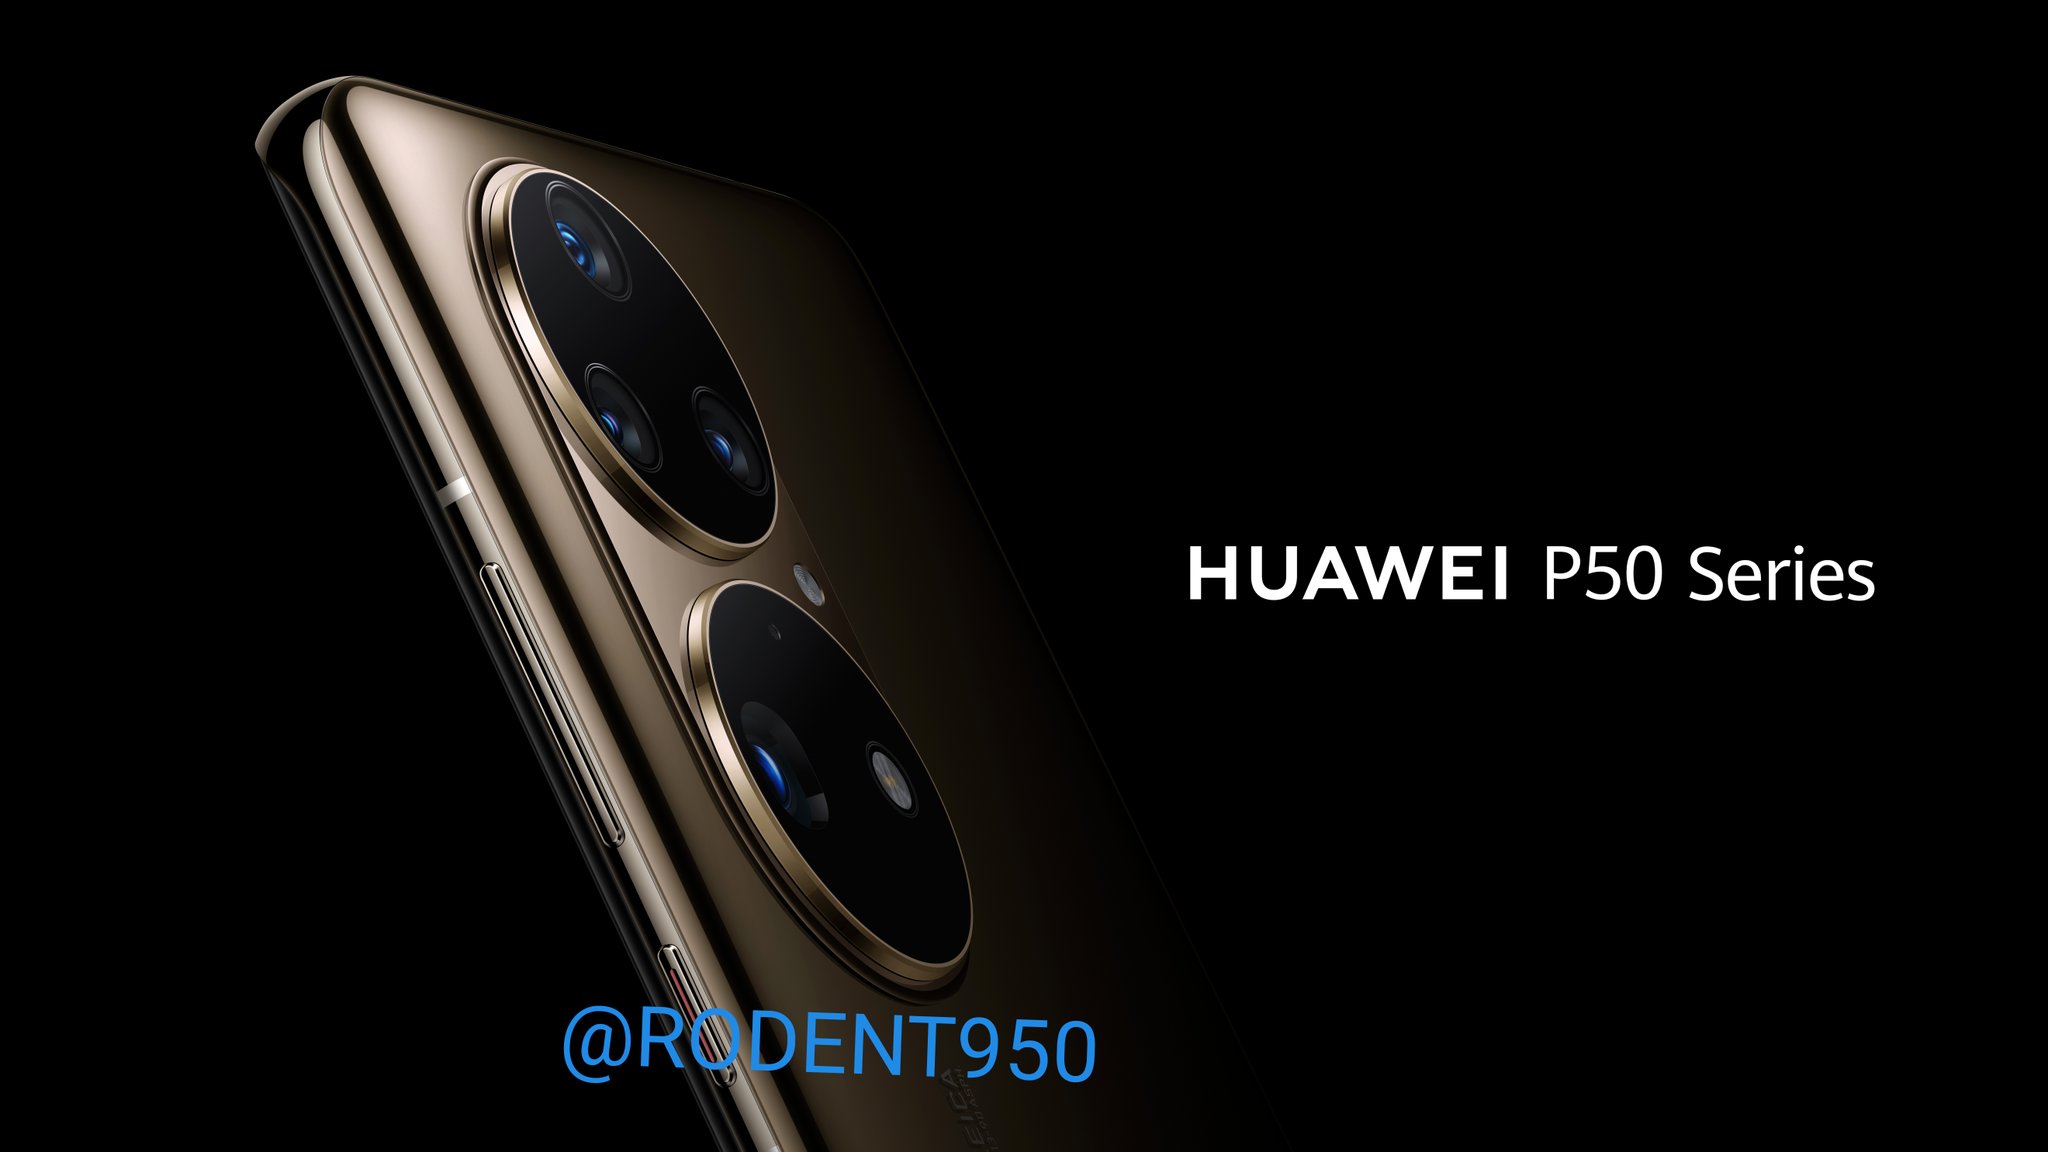 Huawei P50 Renders official-look-alike-1